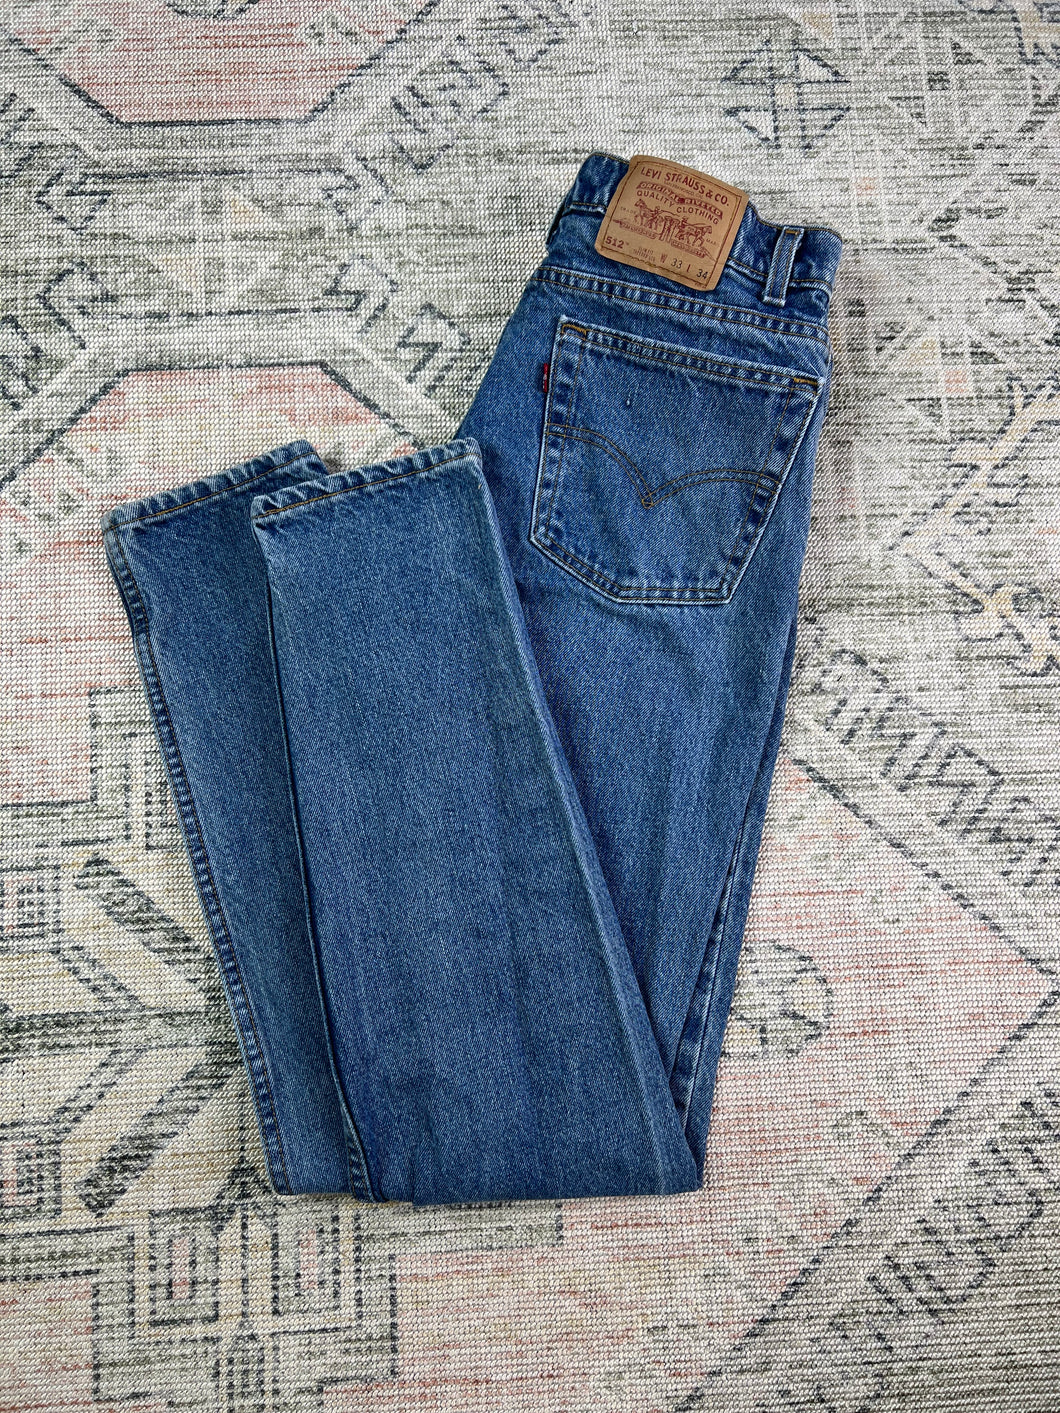 Vintage 90s Levi’s 512 Jeans (31x32.5)